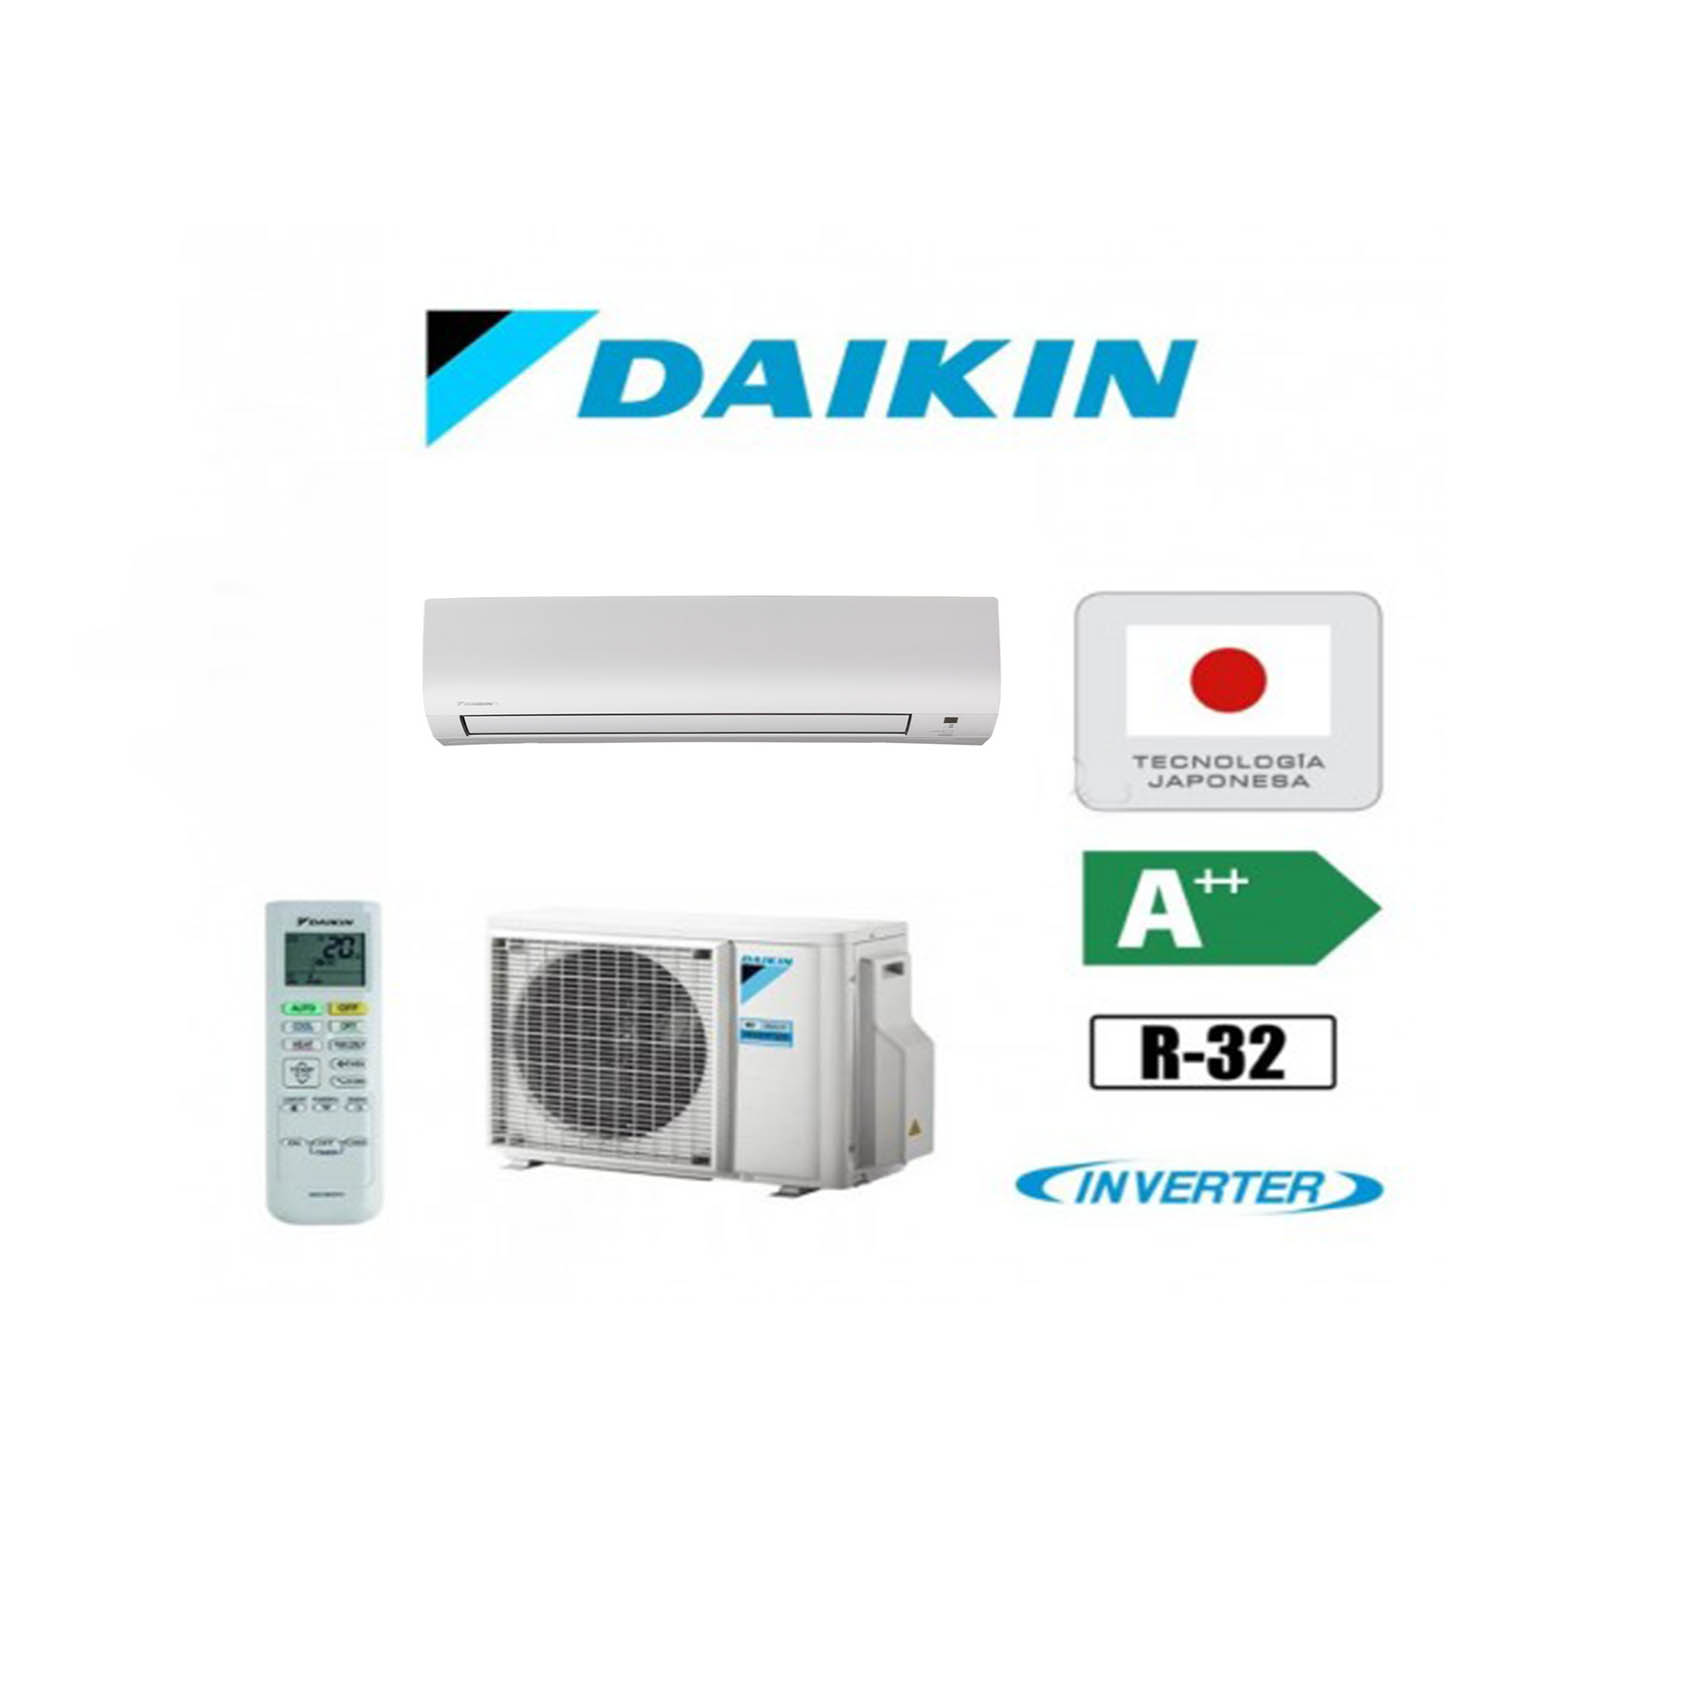 Aire acondicionado Split de la marca Daikin y modelo TXP50M con tecnologia Inverter y gas R22 con A++ eficiencia energetica